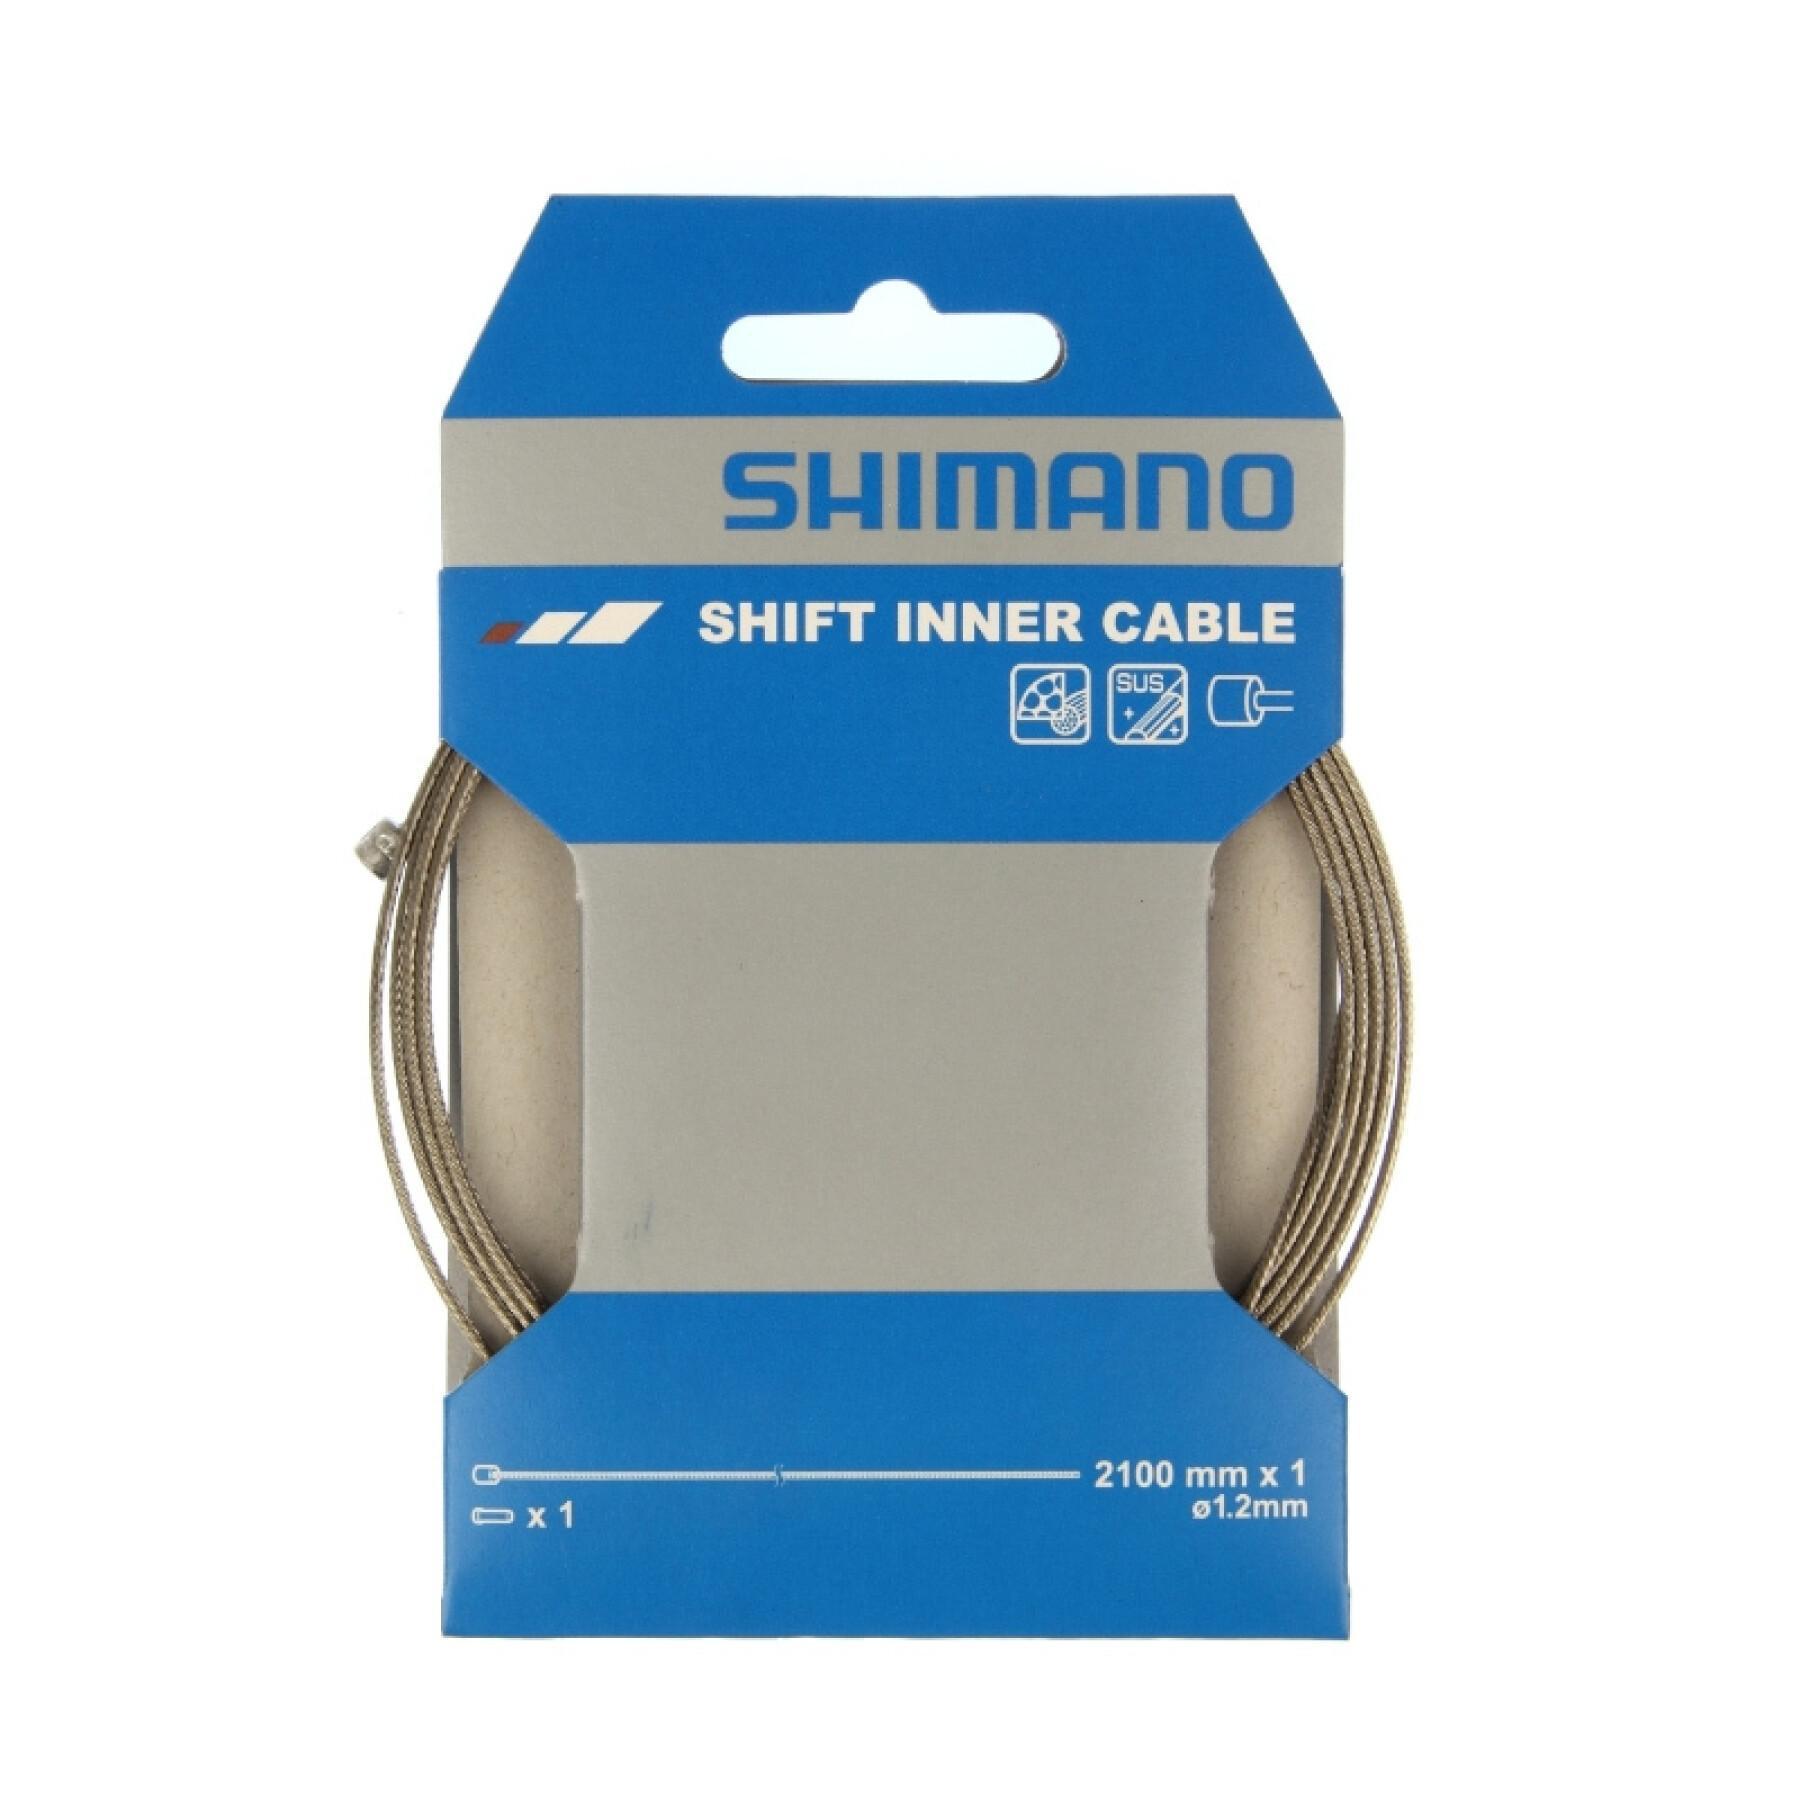 Cable del desviador trasero de acero inoxidable Shimano Sus